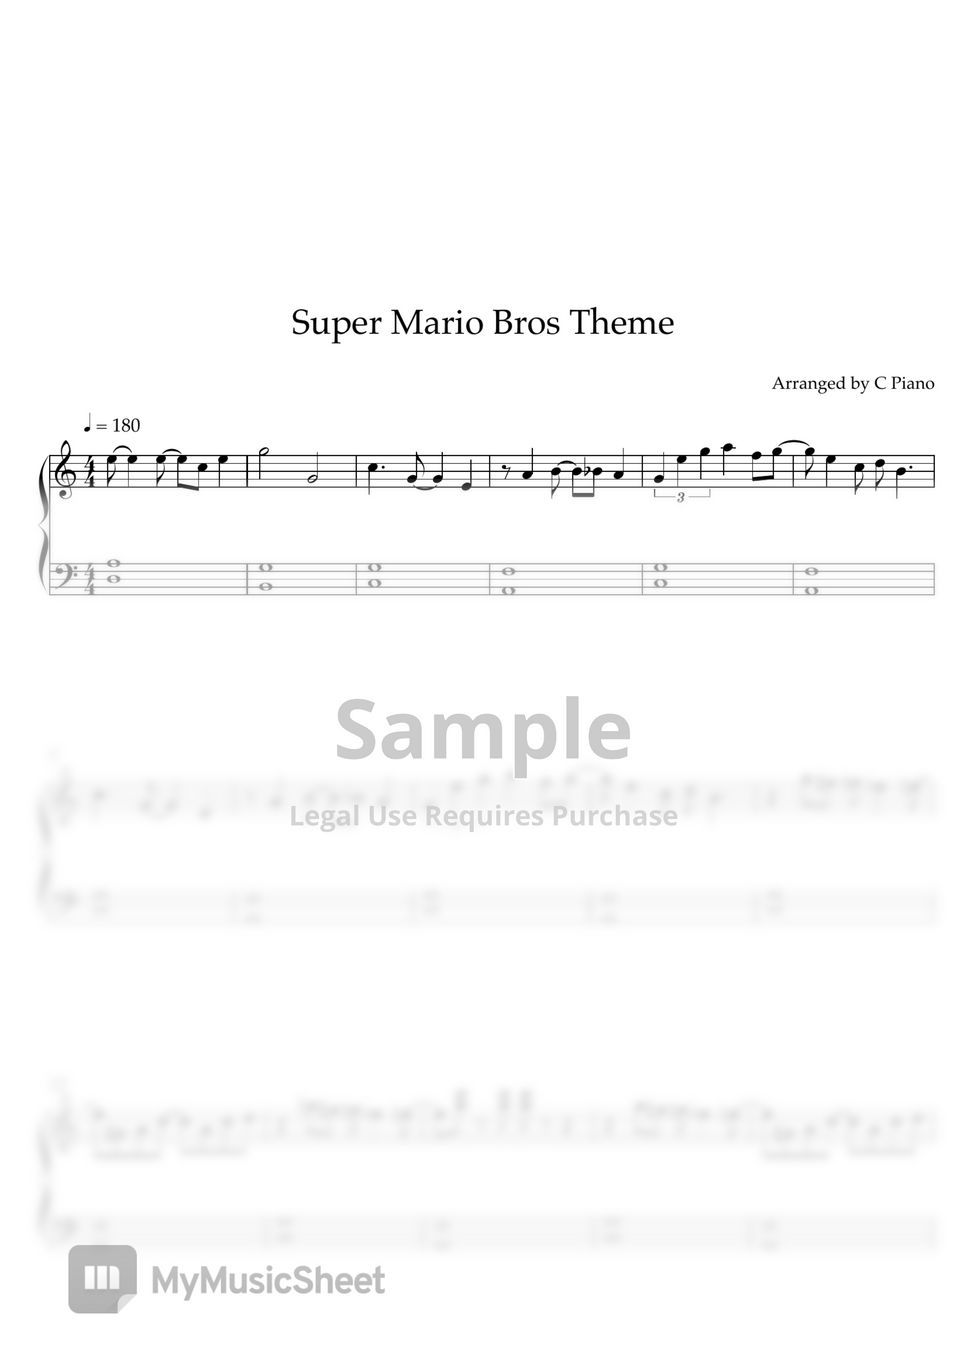 Super Mario Bros - Super Mario Bros (Easy Version) by C Piano